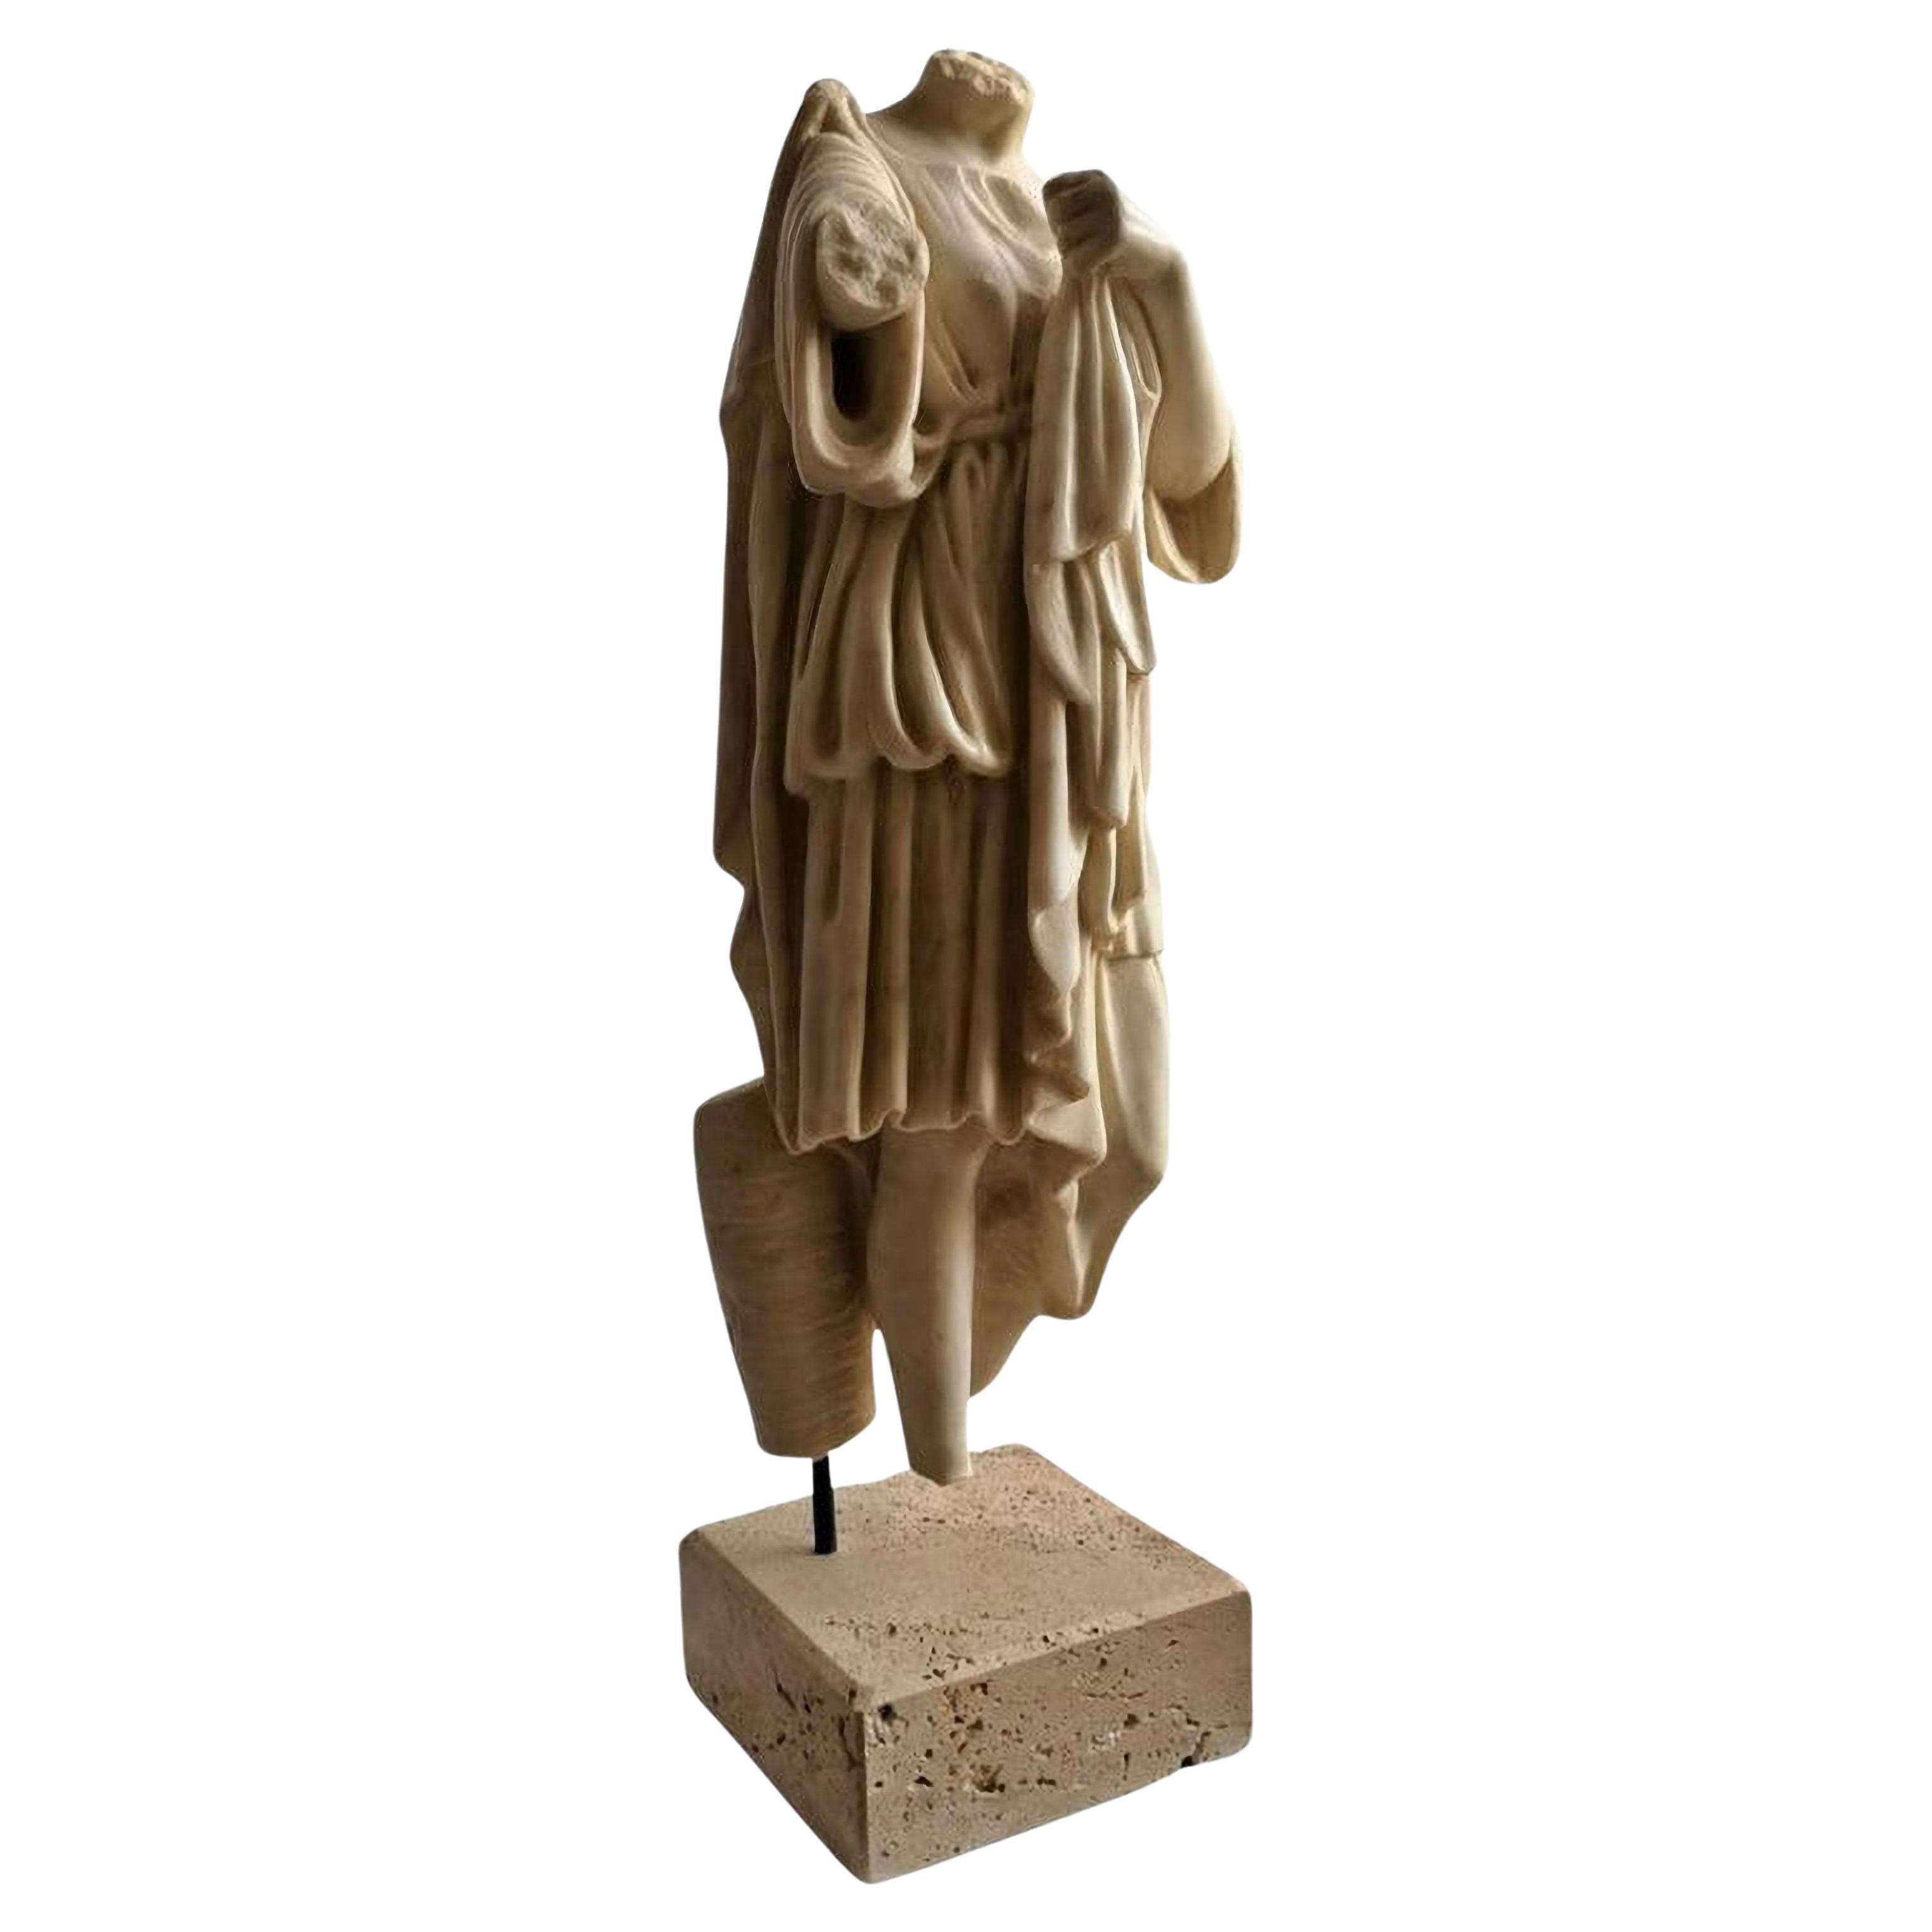 Italian Sculpture "Venus Gabi" Headless Torso Early 20th Century Carrara Marble